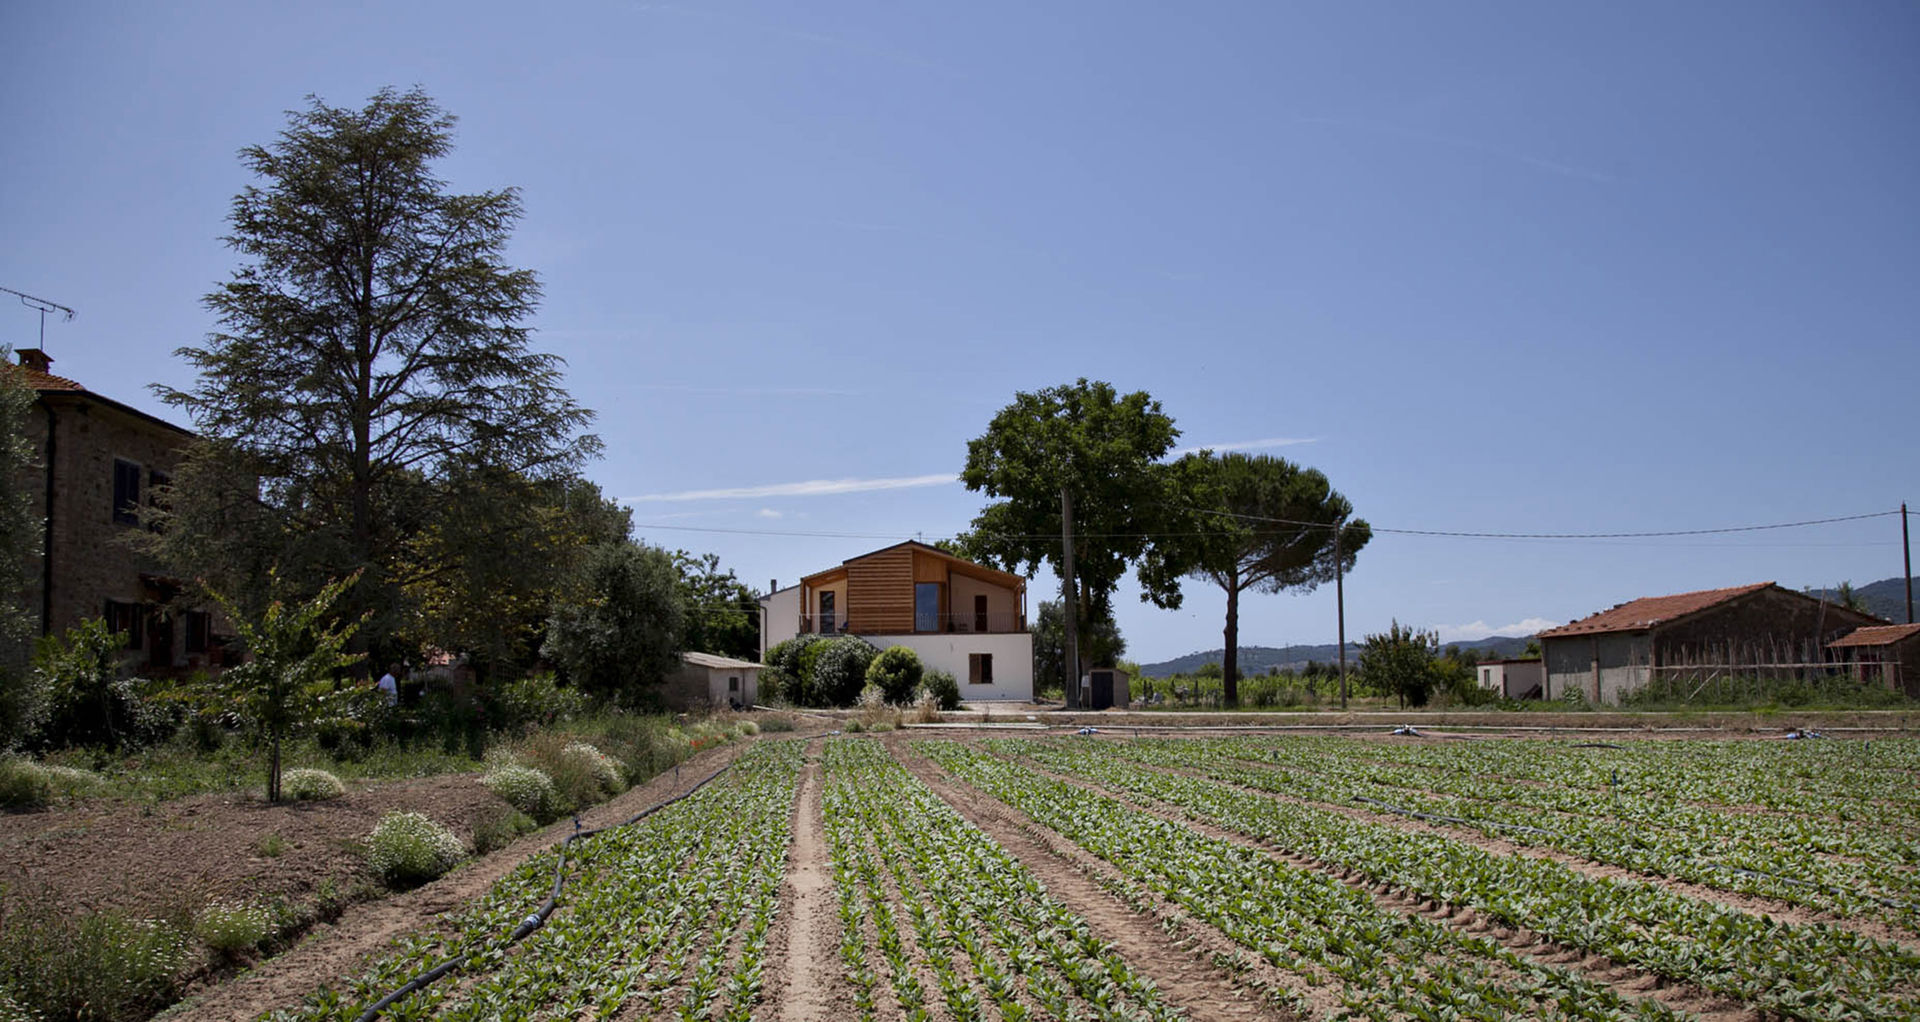 Ristrutturazione ed ampliamento di un fabbricato rurale a Suvereto (LI), mc2 architettura mc2 architettura Casas de estilo mediterráneo